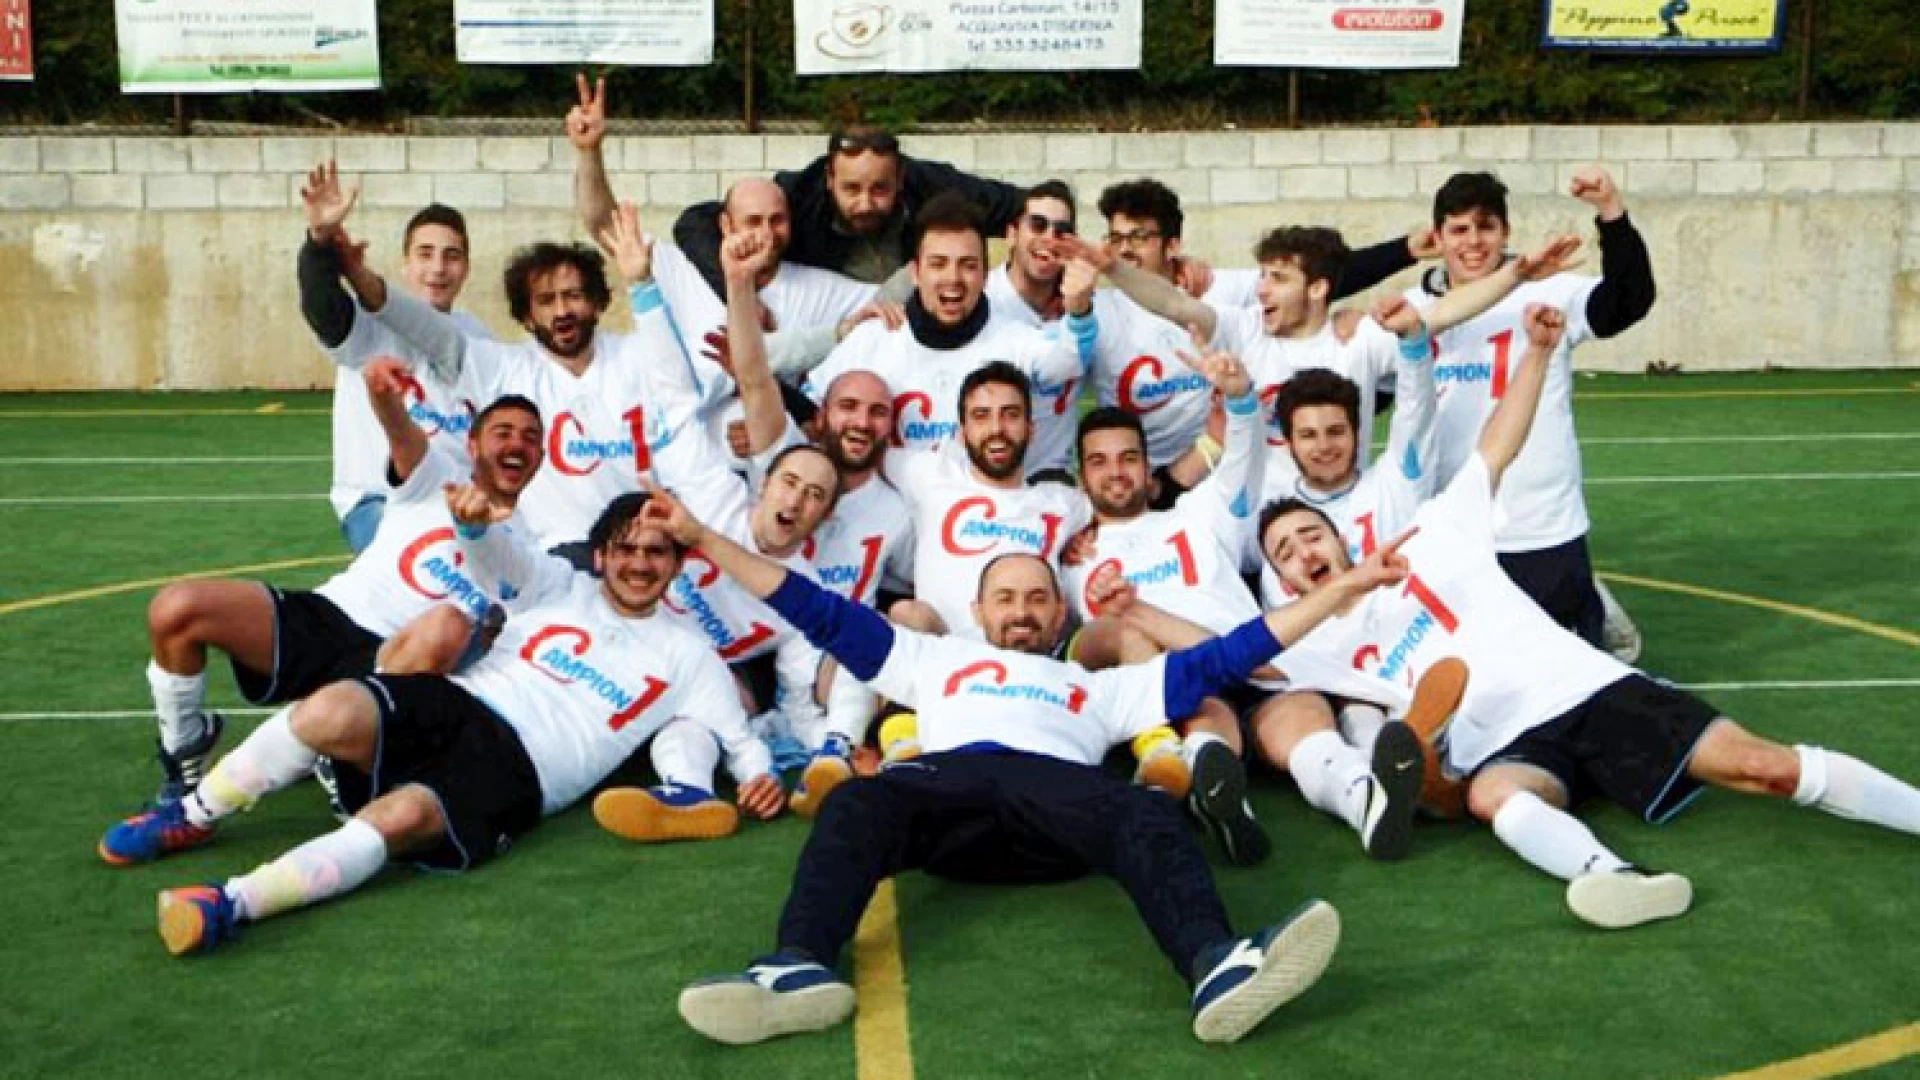 Calcio a 5 : 20 vittorie su 21 partite giocate. Continua la marcia inarrestabile della Futsal Acquaviva vittoriosa anche a Castel Del Giudice.